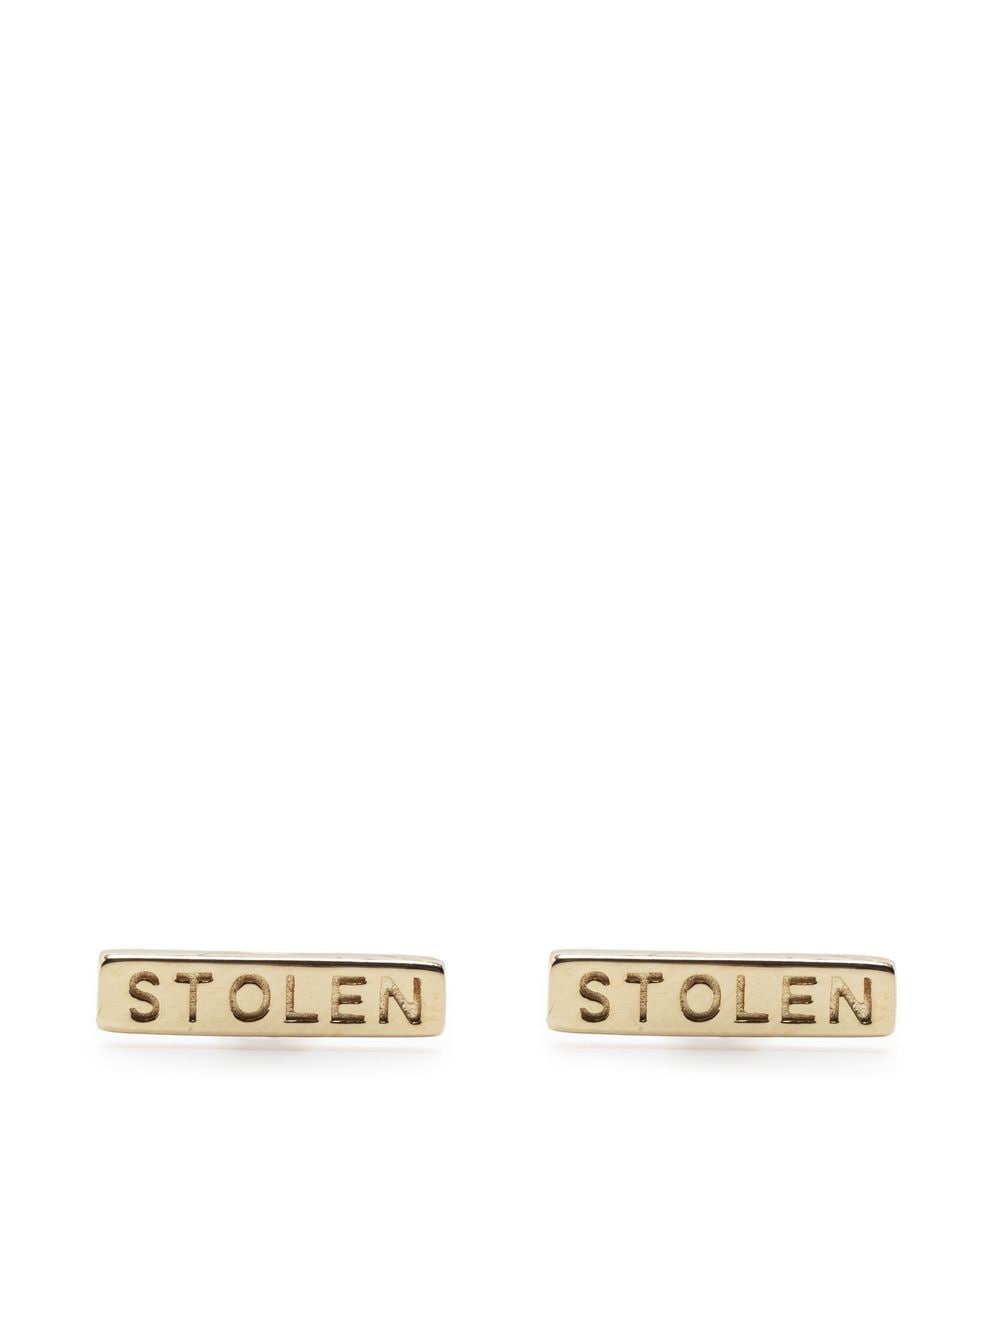 Stolen Bar 9kt gold earring